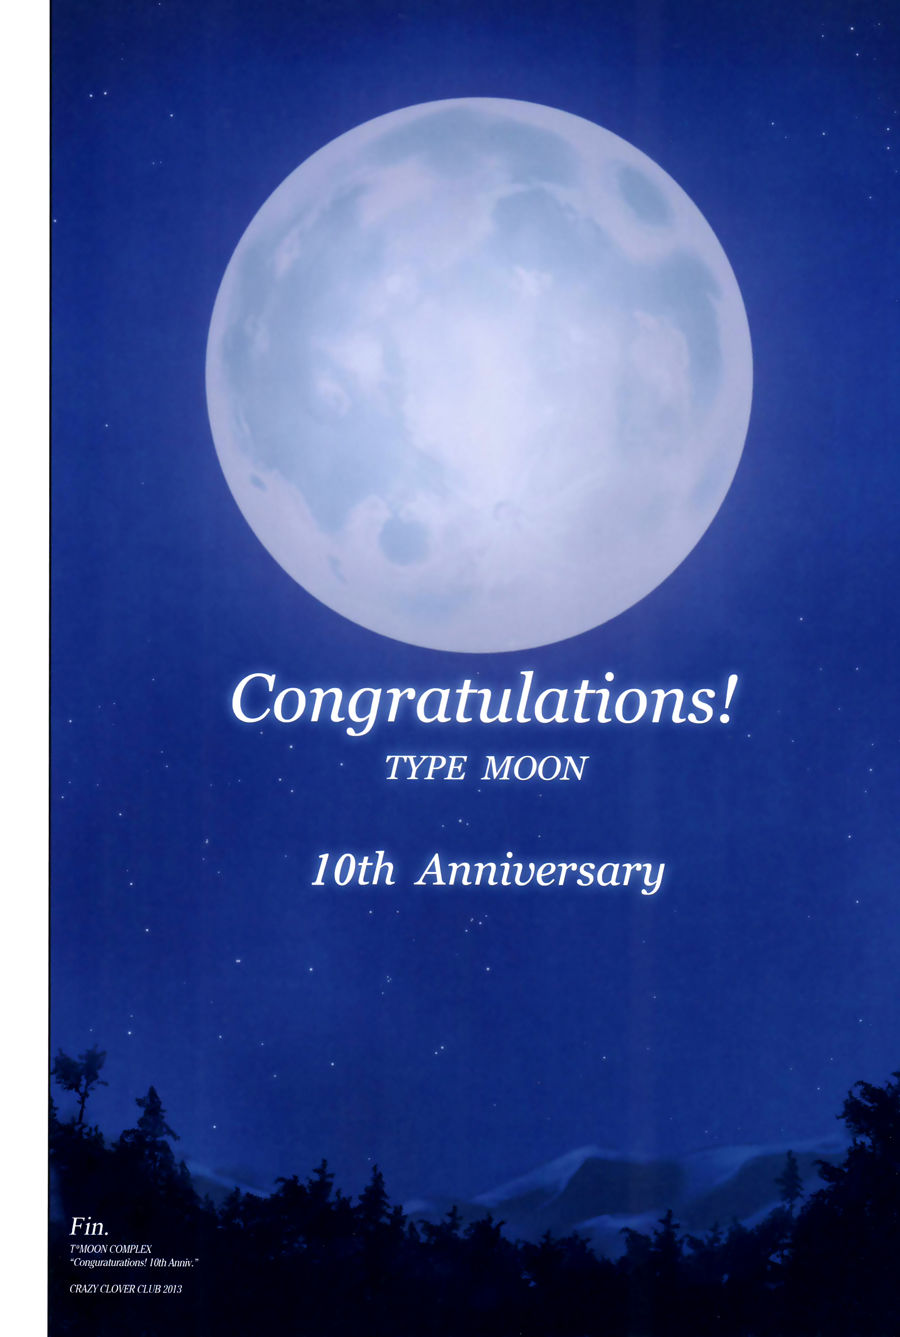 [crazy Trevo Clube (shirotsumekusa)] t Lua complexo congratulations! 10th aniversário (various) [exas] parte 2